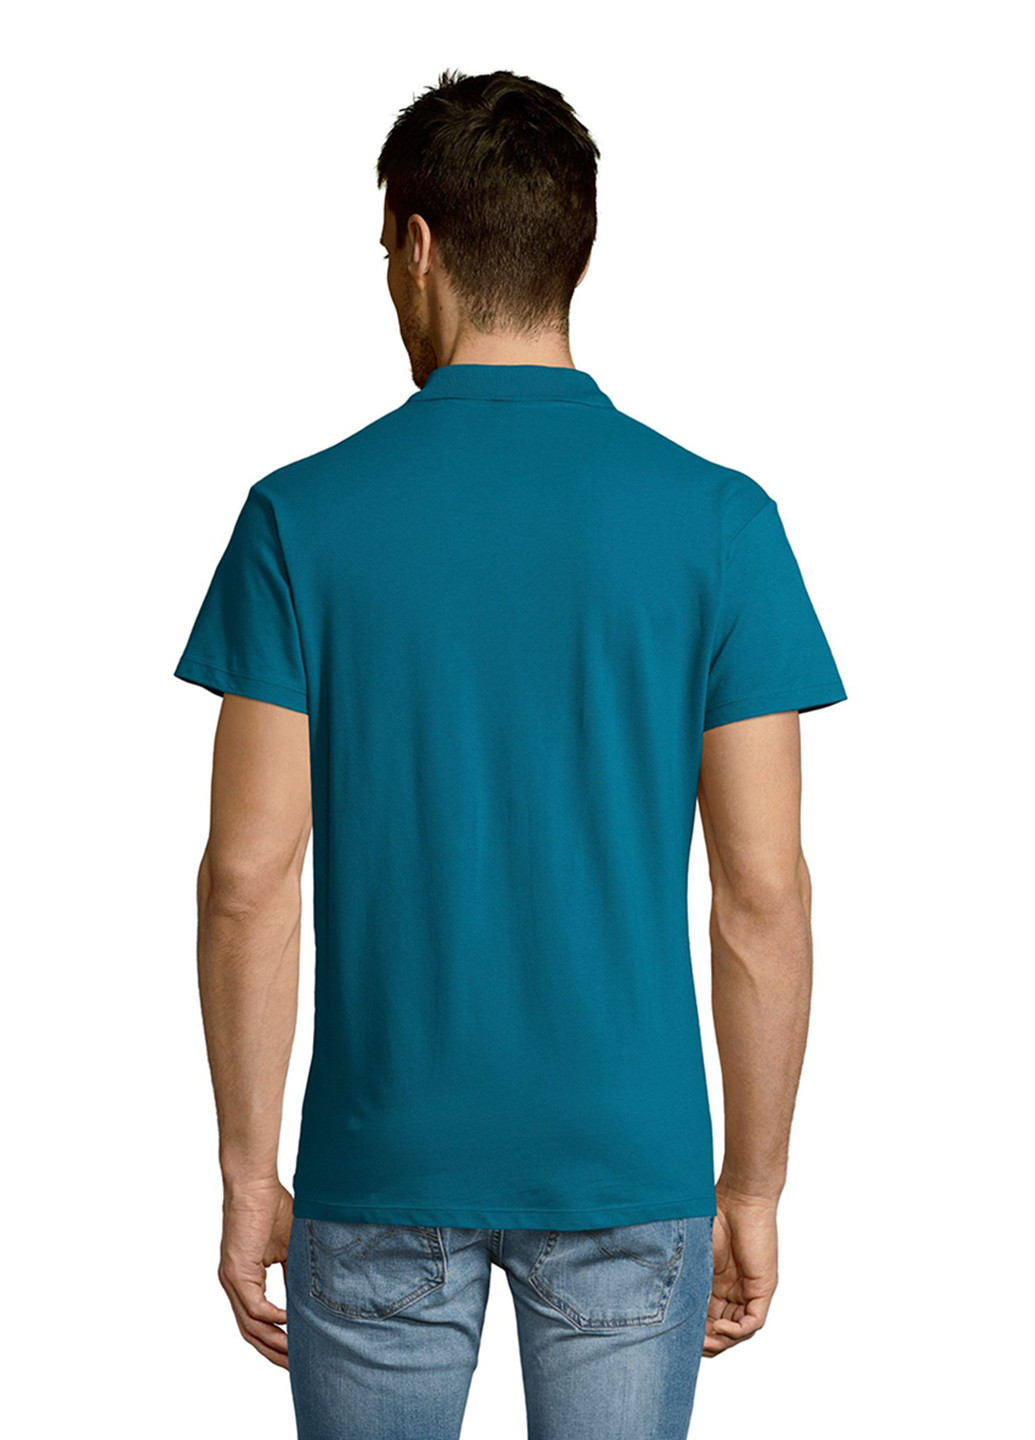 Бирюзовая футболка-поло для мужчин Sol's леопардовый